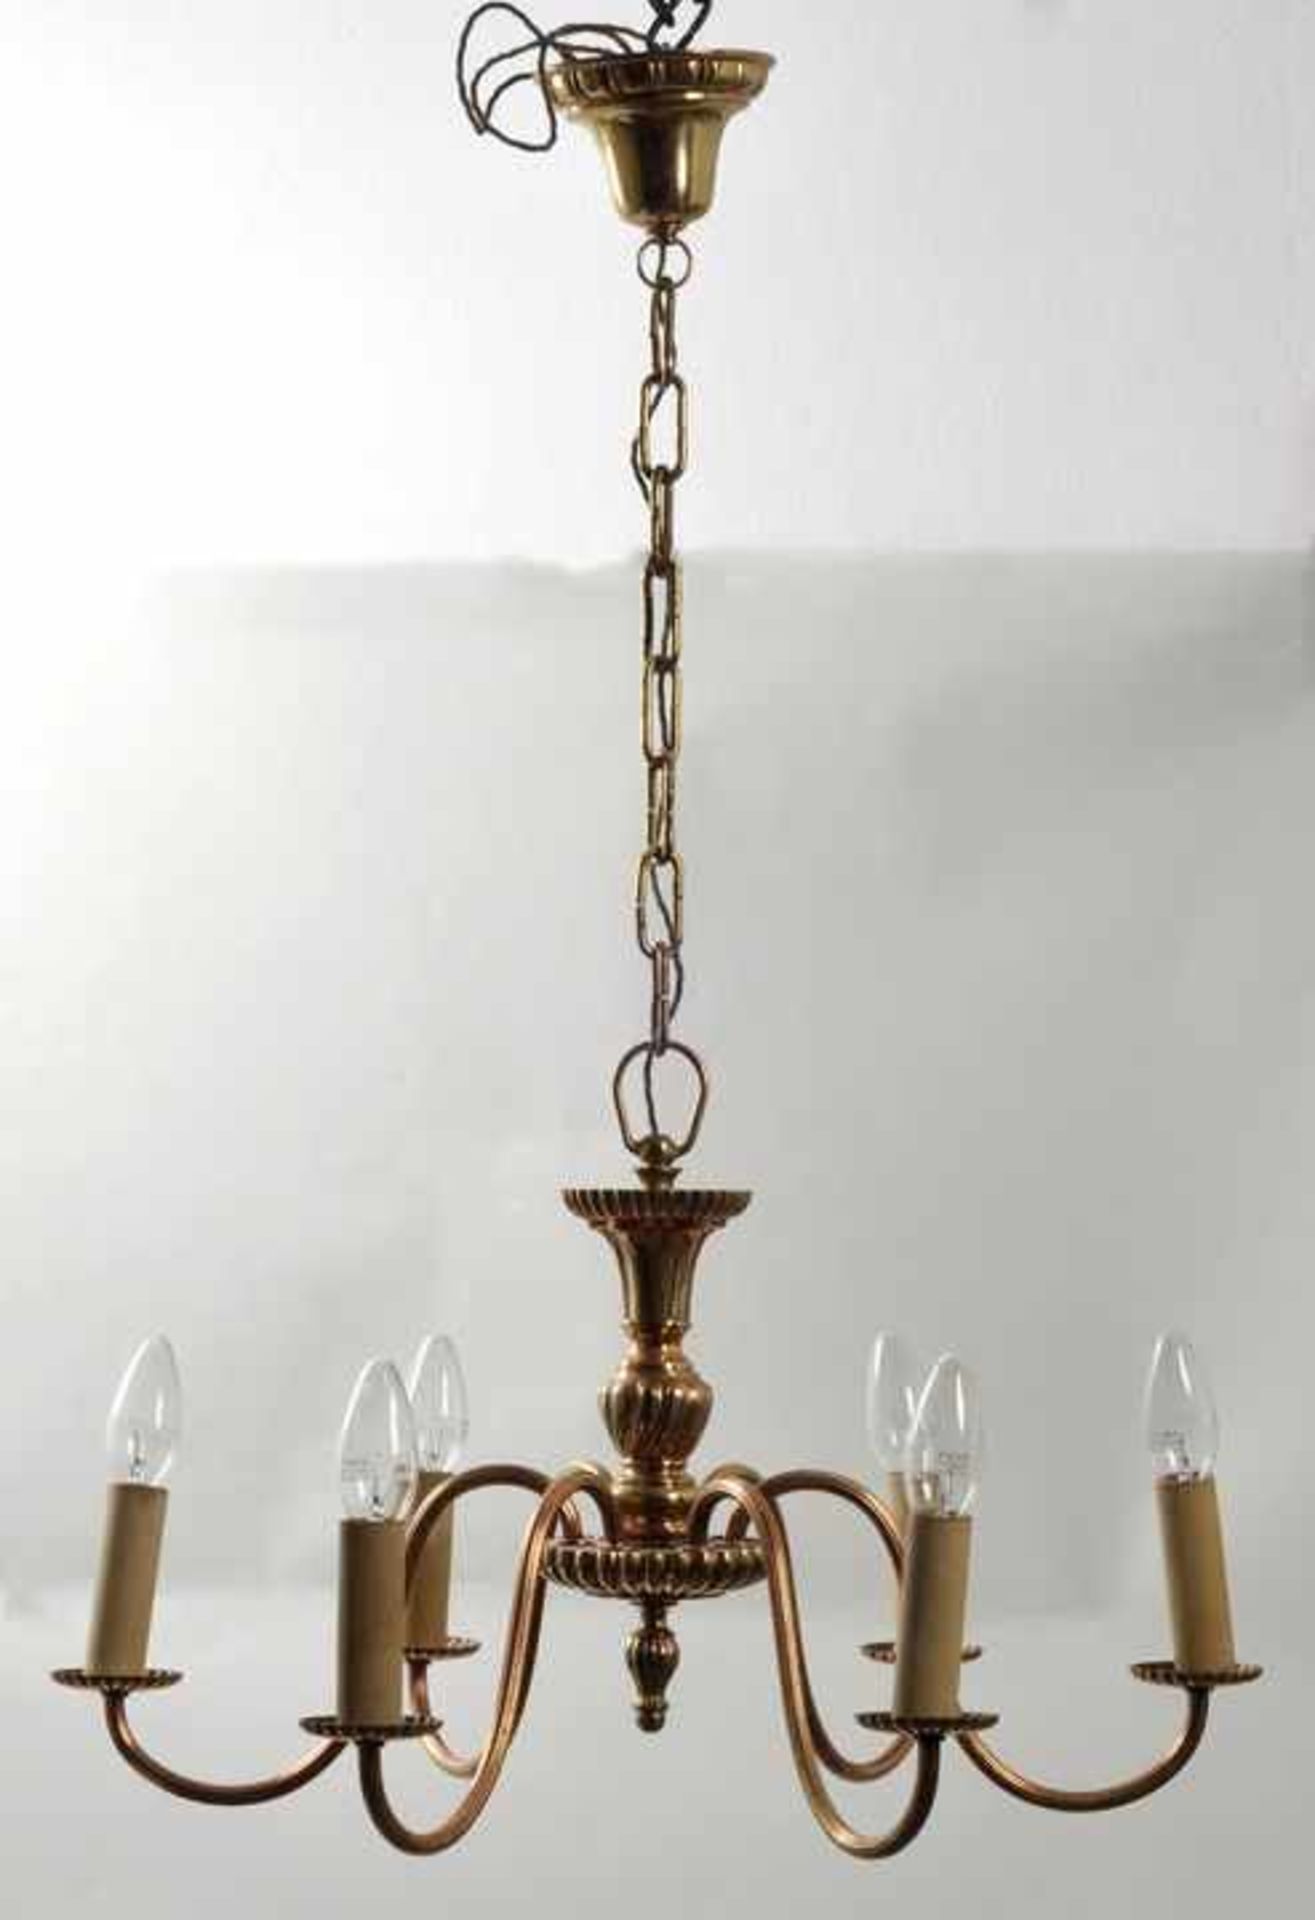 Deckenlampe im flämischen Stil, 1. H. 20. Jh.Metall (Messing), sechs s-förmig geschweifte Arme an